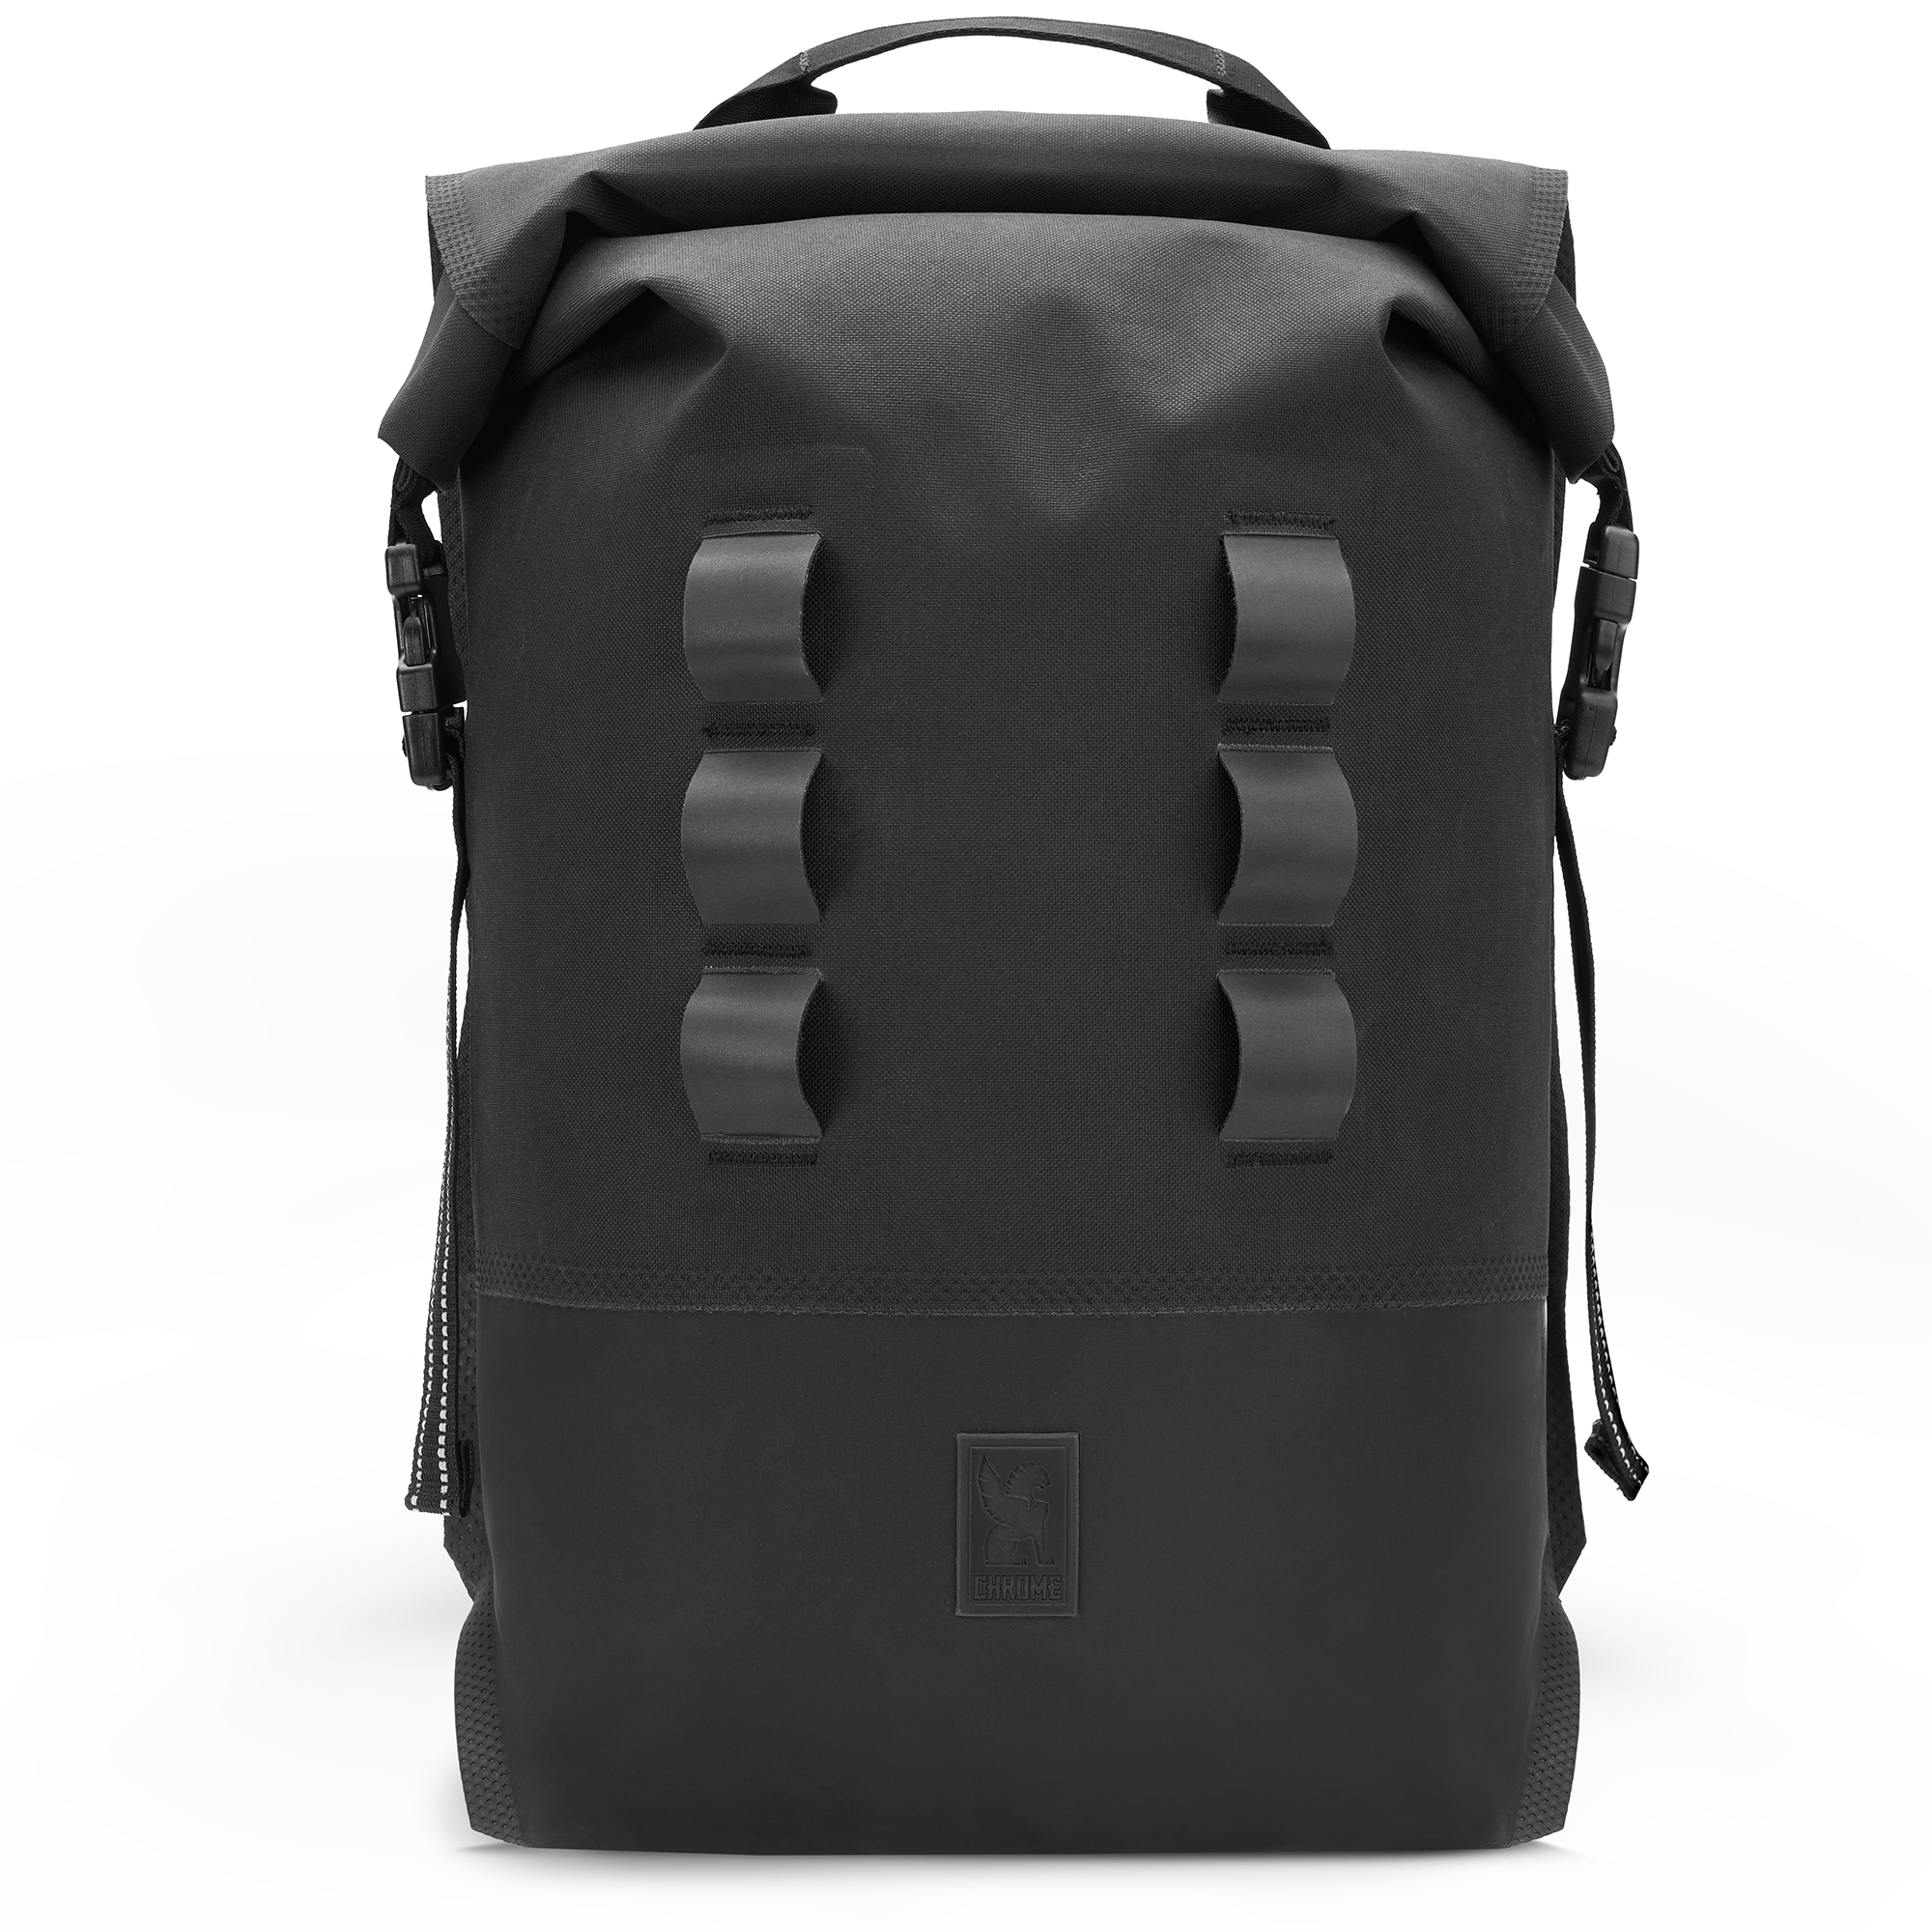 Waterproof 20L backpack in black reflective loops #color_black